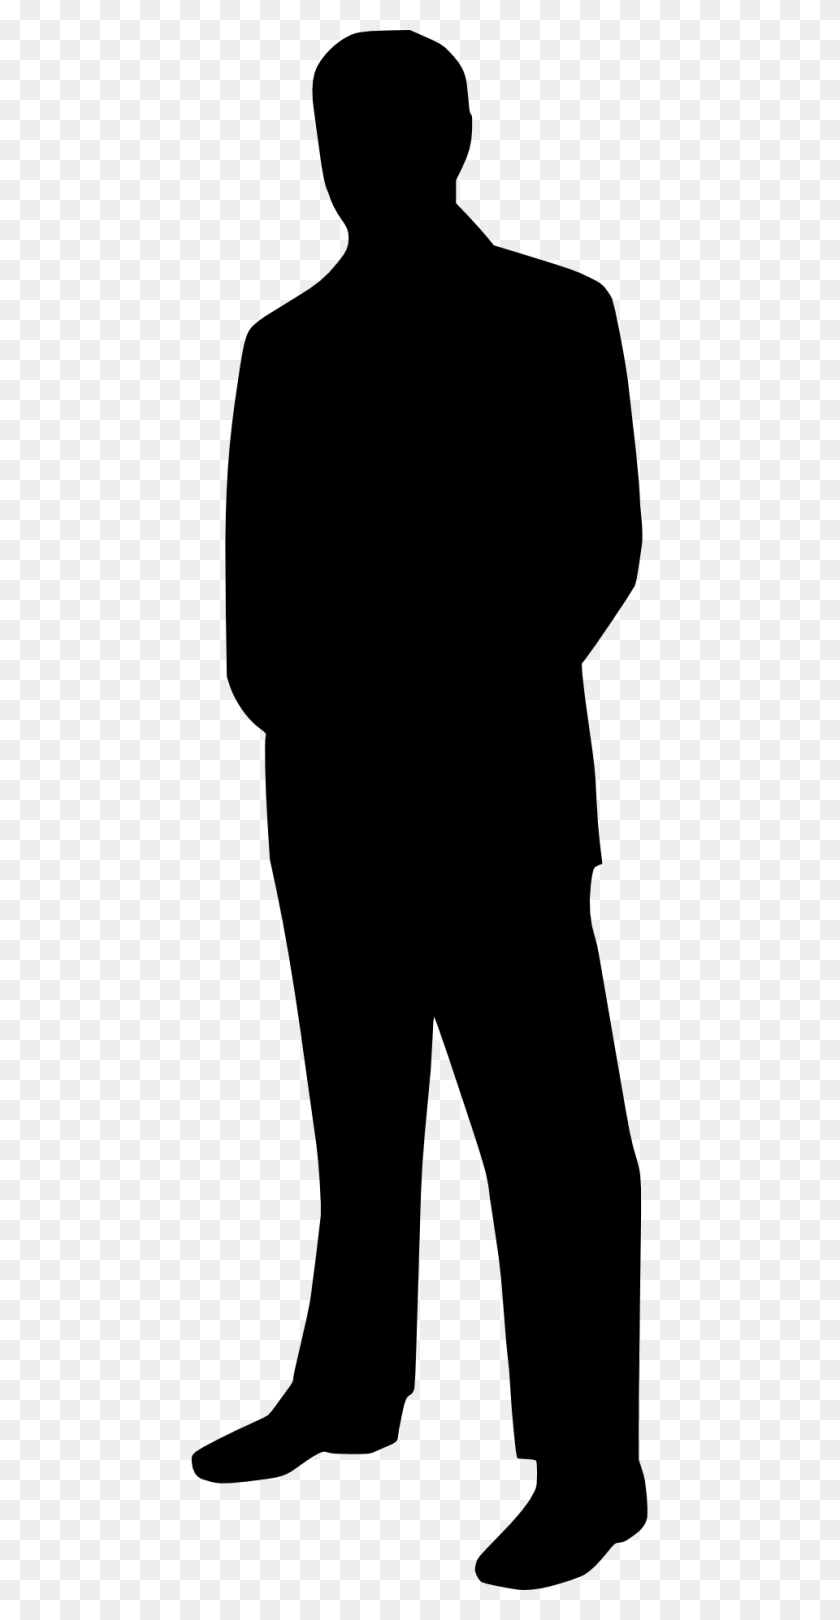 960x1920 Деловой Человек В Костюме С Галстуком Черно-Белый Силуэт Бесплатное Изображение - Человек В Костюме Png